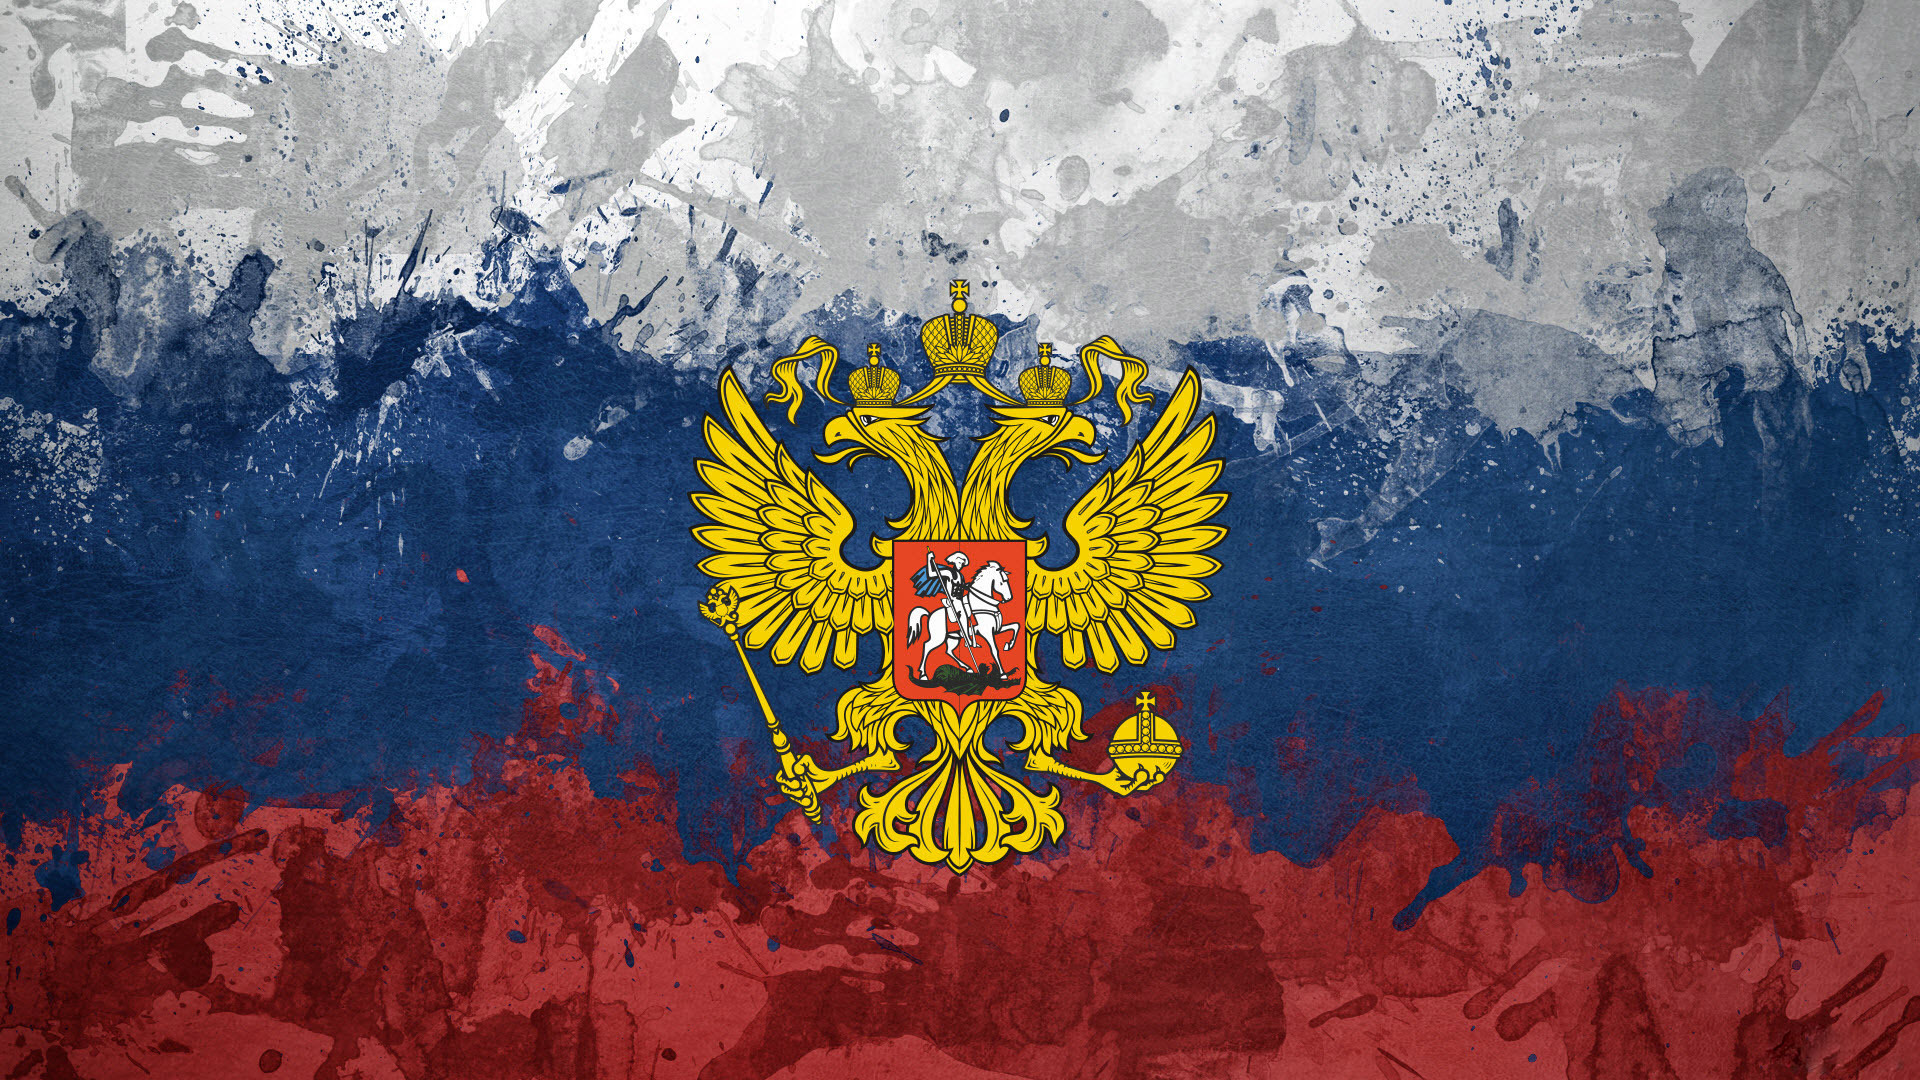 Аниме на фоне флага россии